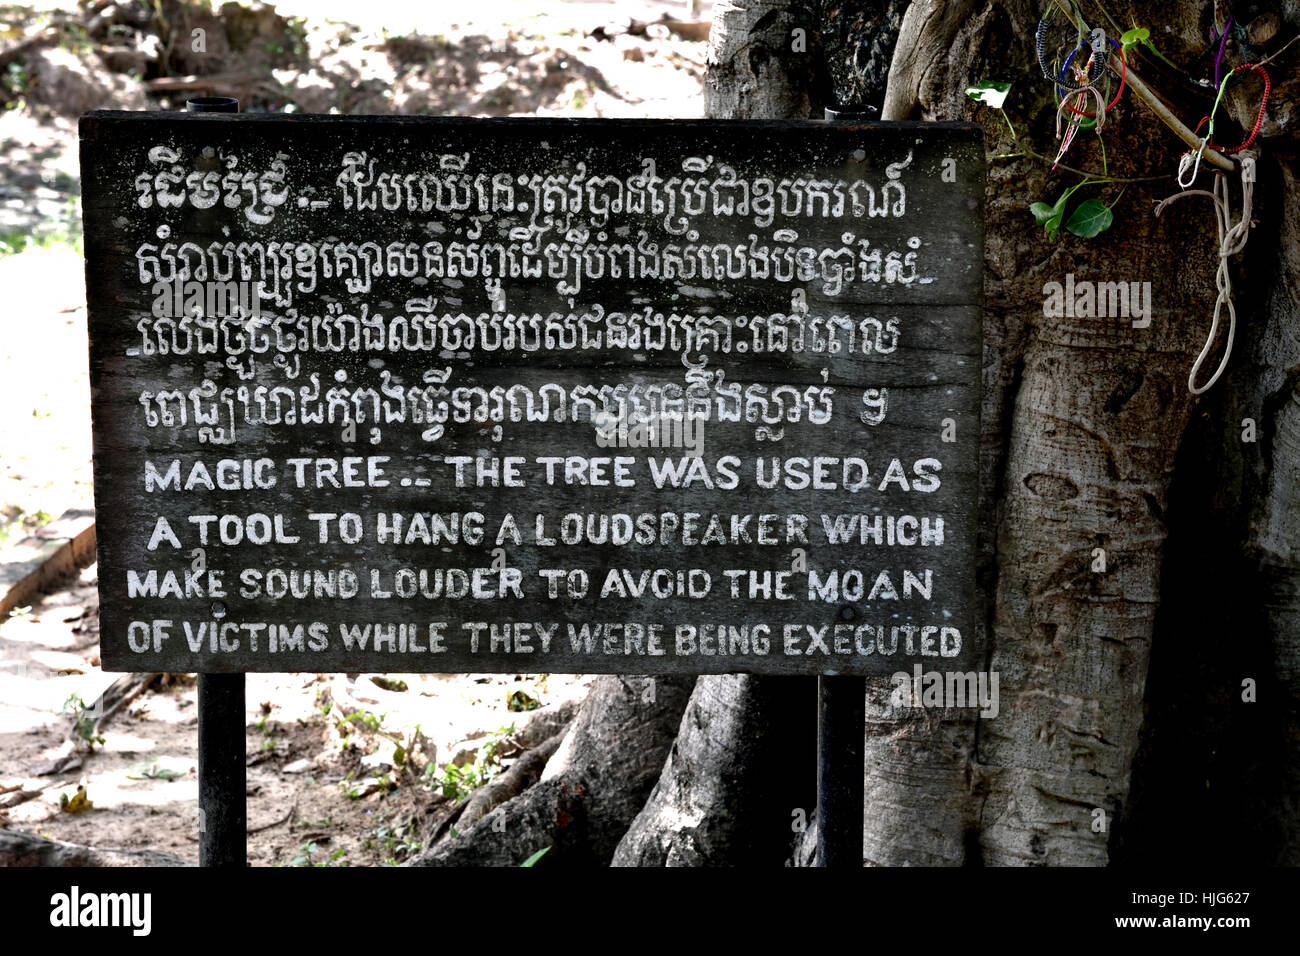 Le site du mémorial de l'arbre magique - The Killing Fields - Musée de Choeung Ek Cambodge ( fosse commune des victimes de Pol Pot - Khmers rouges à partir de 1963 - 1997. Phnom Penh Cambodge ) Banque D'Images